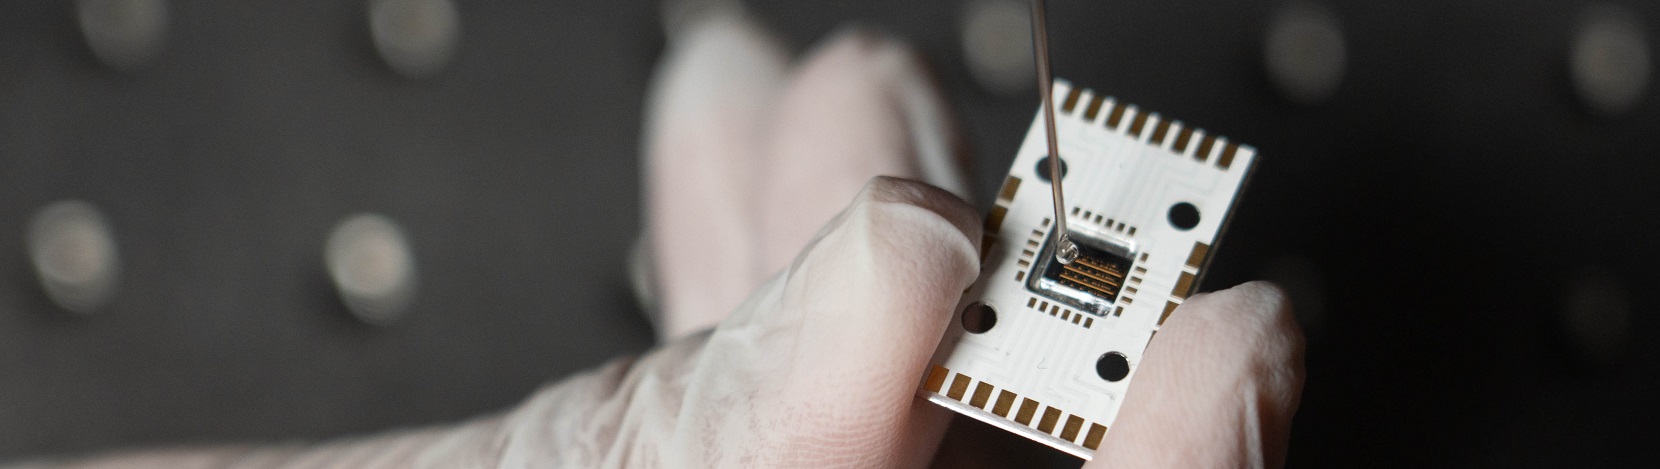 Chemielabor auf einem Chip analysiert Flüssigkeiten in Echtzeit – Electrosuisse